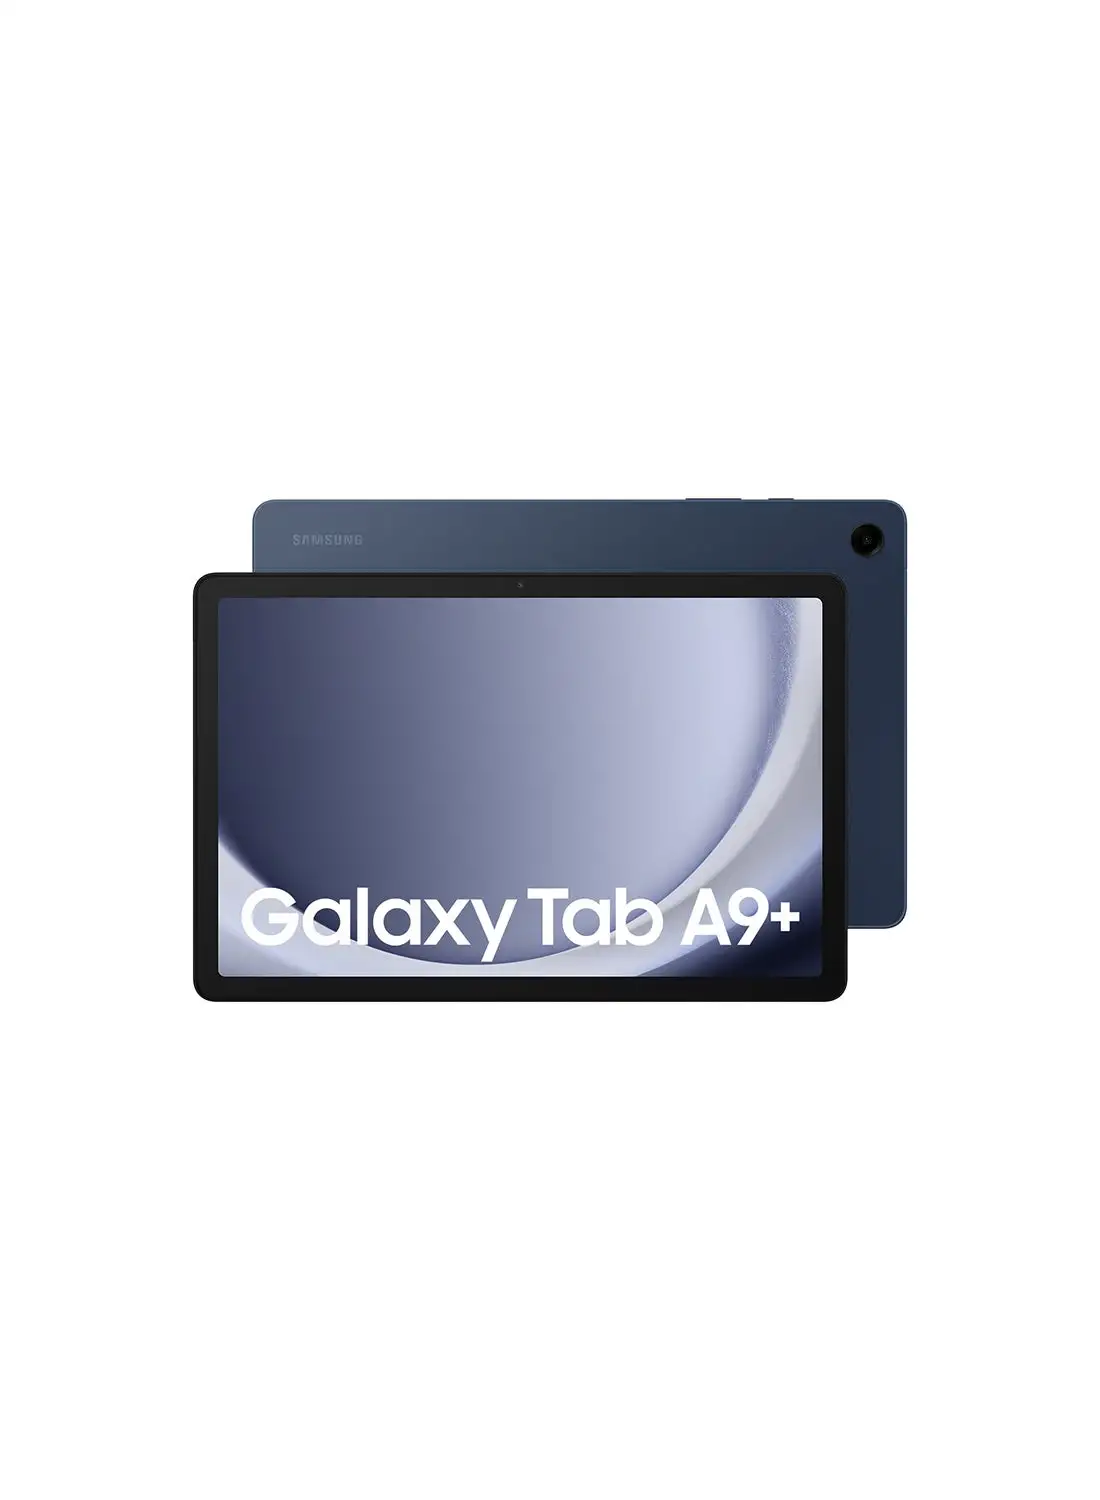 Samsung Galaxy Tab A9 Plus Navy 4GB RAM 64GB Wifi - Middle East Version